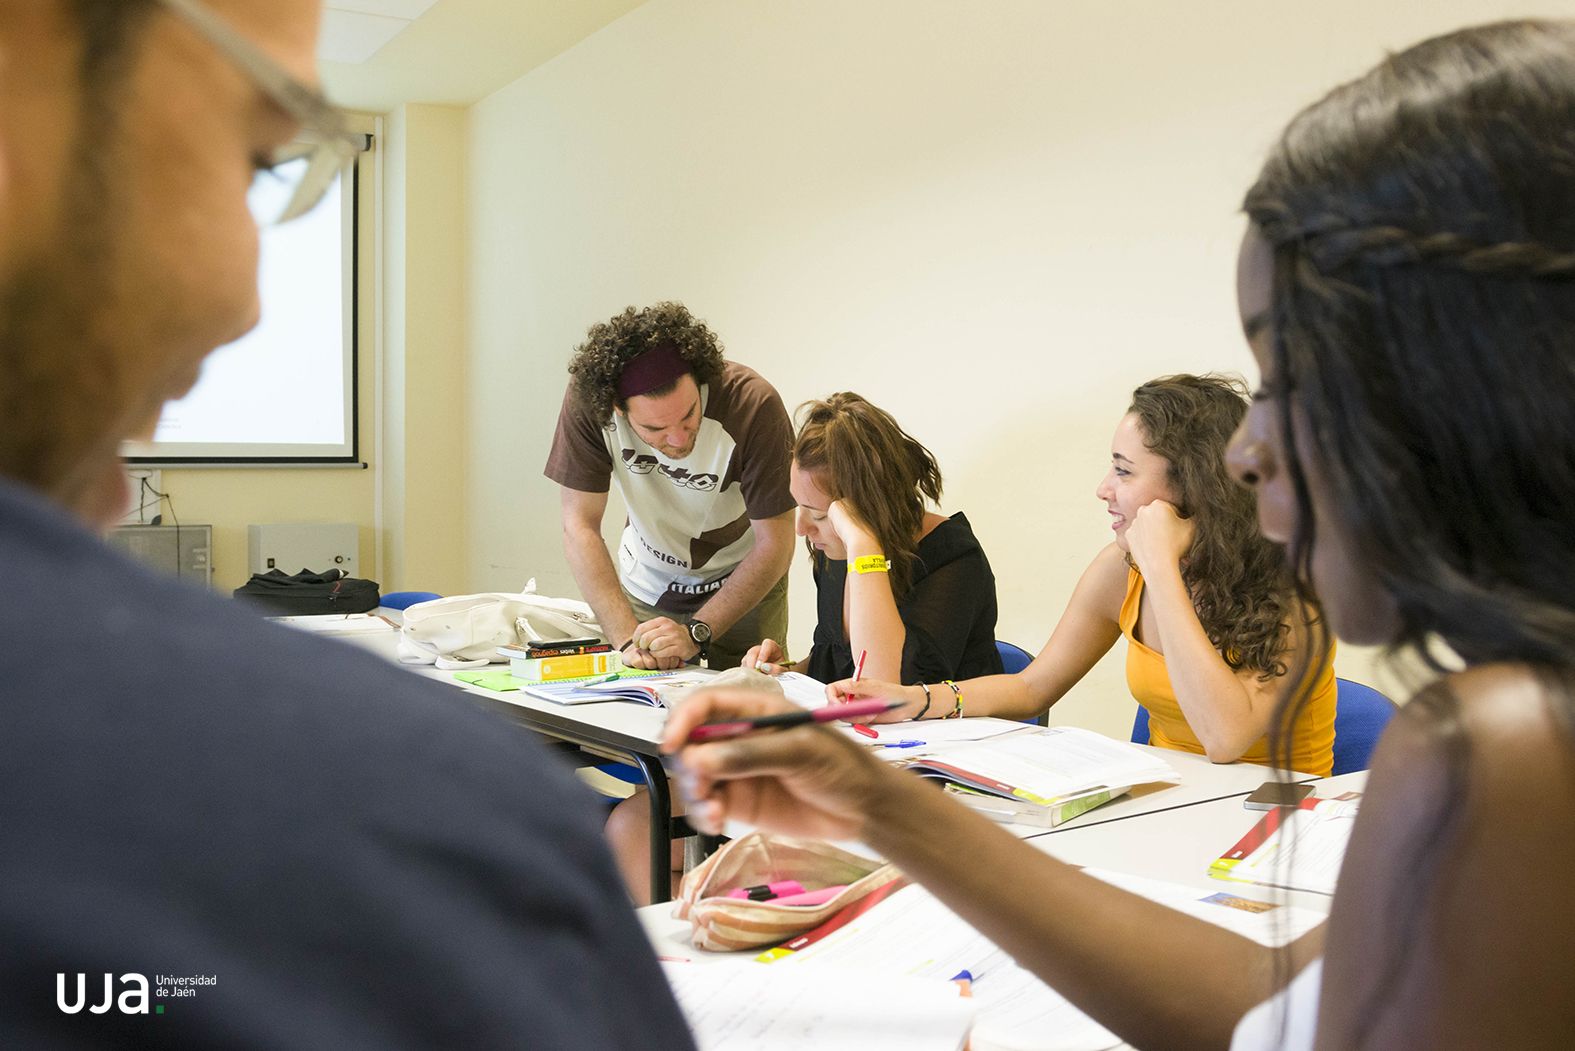 La UJA es la cuarta universidad española en valoración por parte de los estudiantes internacionales